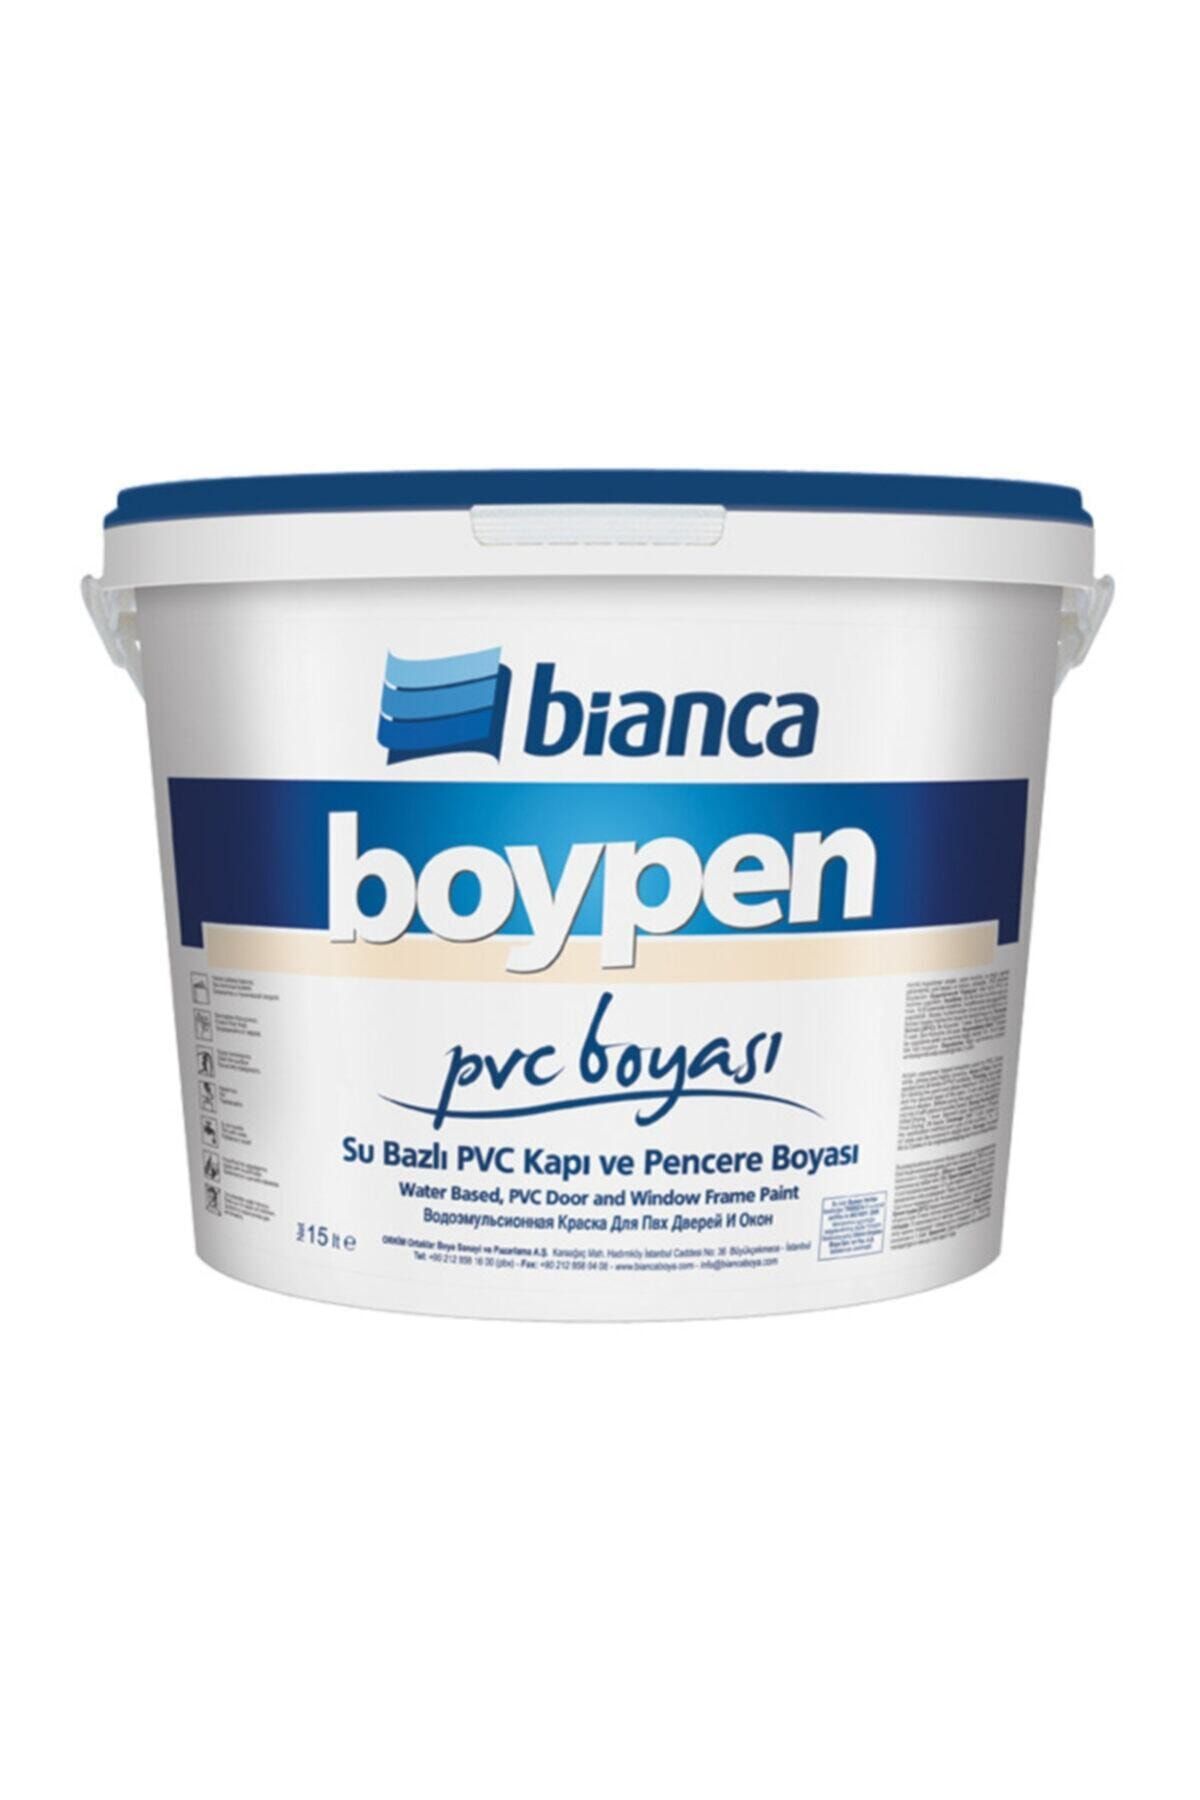 Bianca Boypen Pvc Boyası 2.5 Lt